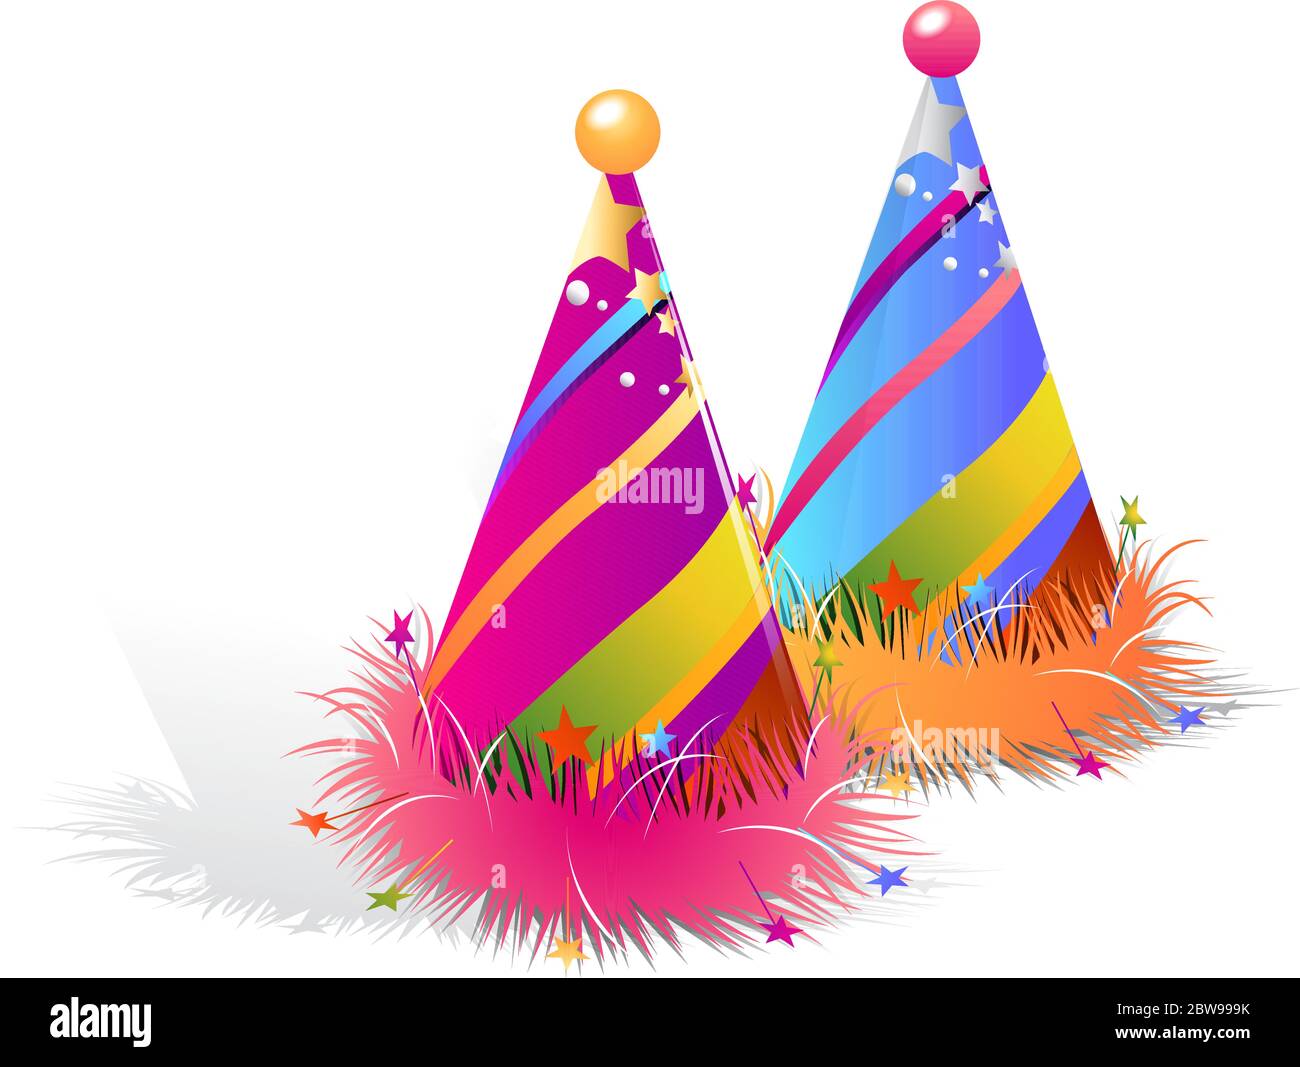 Immagine del tappo di compleanno, con vettore di sfondo bianco Illustrazione Vettoriale